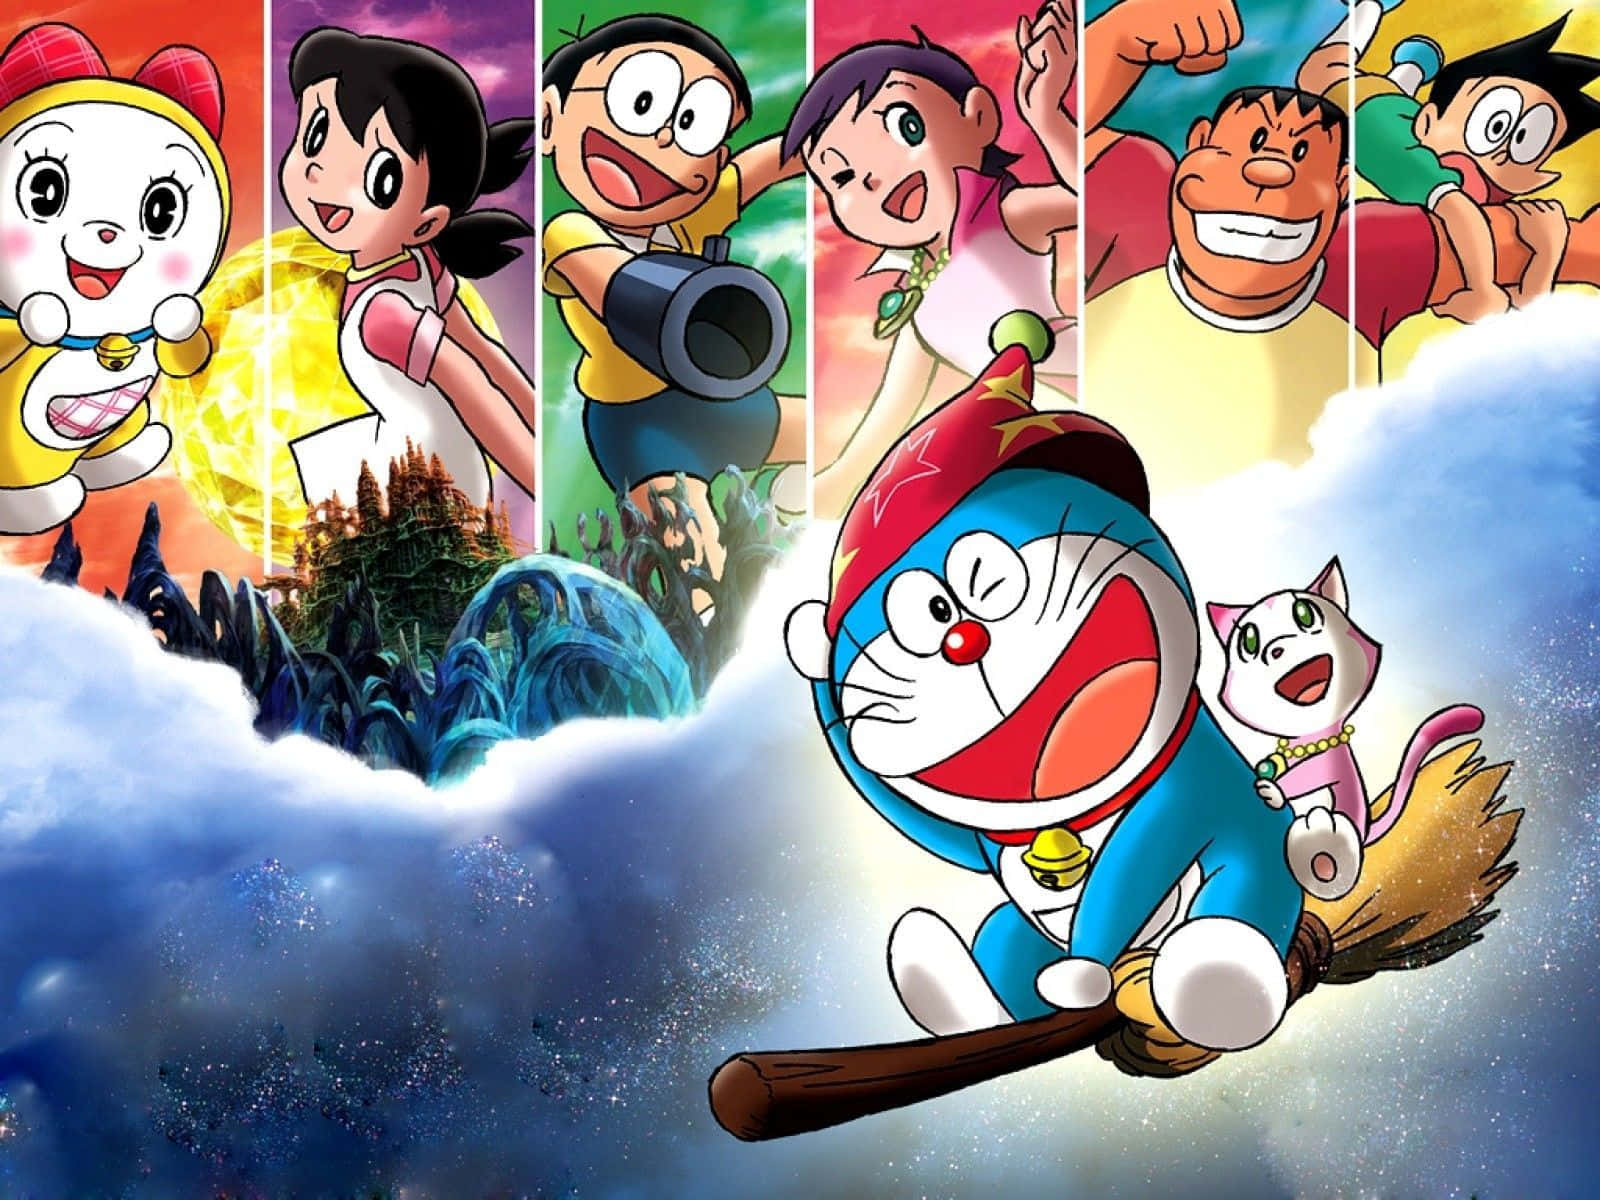 Doraemonbygger En Fæstning Med Sine Venner.